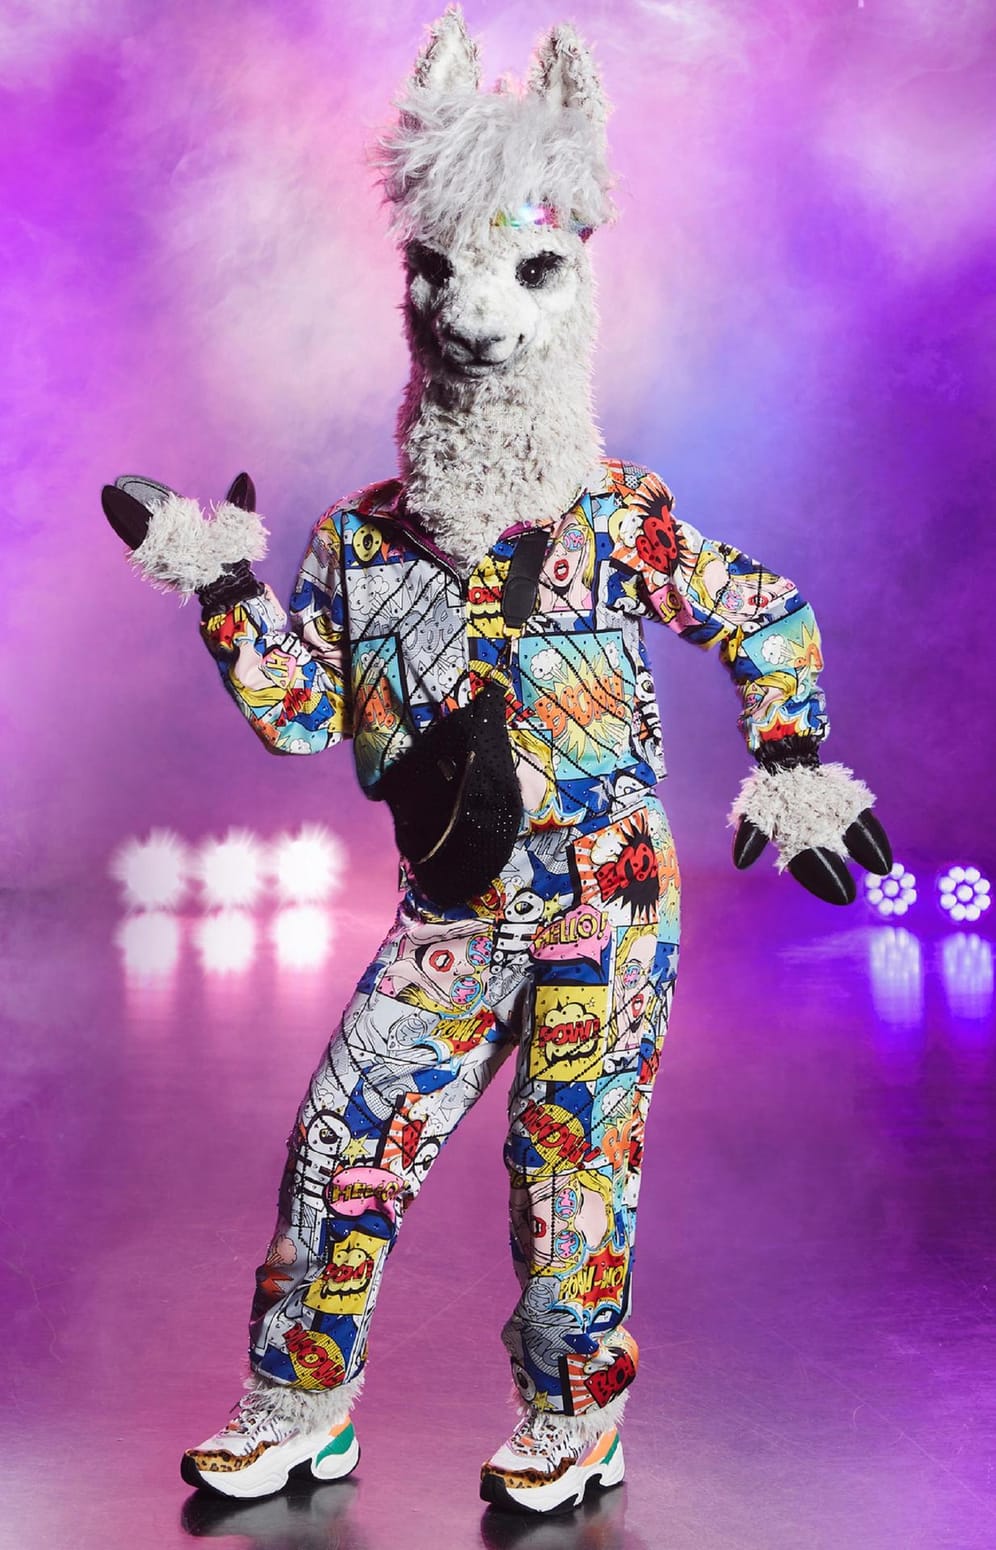 Das Alpaka: Der Star unter dem Kostüm hält gleich mehrere Outfits parat.